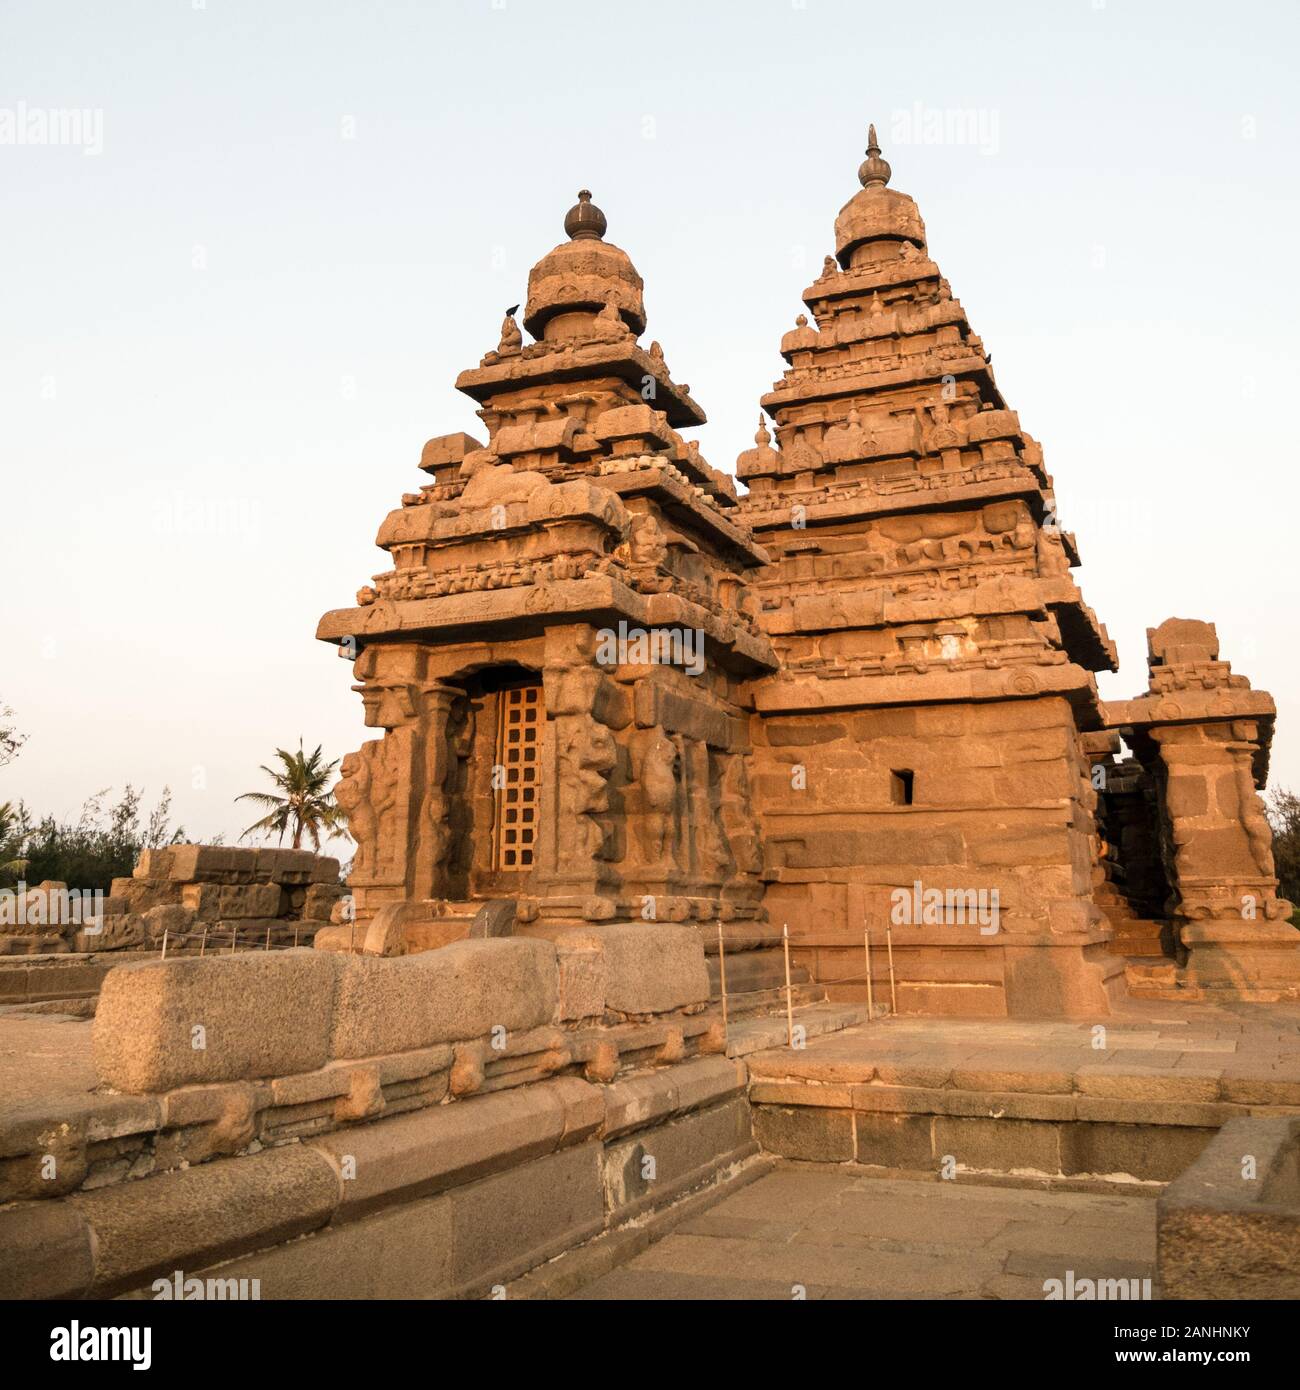 Il Tempio Shore, parte del più grande storico Mahabalipuram sito Patrimonio Mondiale dell'UNESCO, sulla costa orientale dell'India, a sud di Chennai, nello Stato del Tamil Nadu. Foto Stock